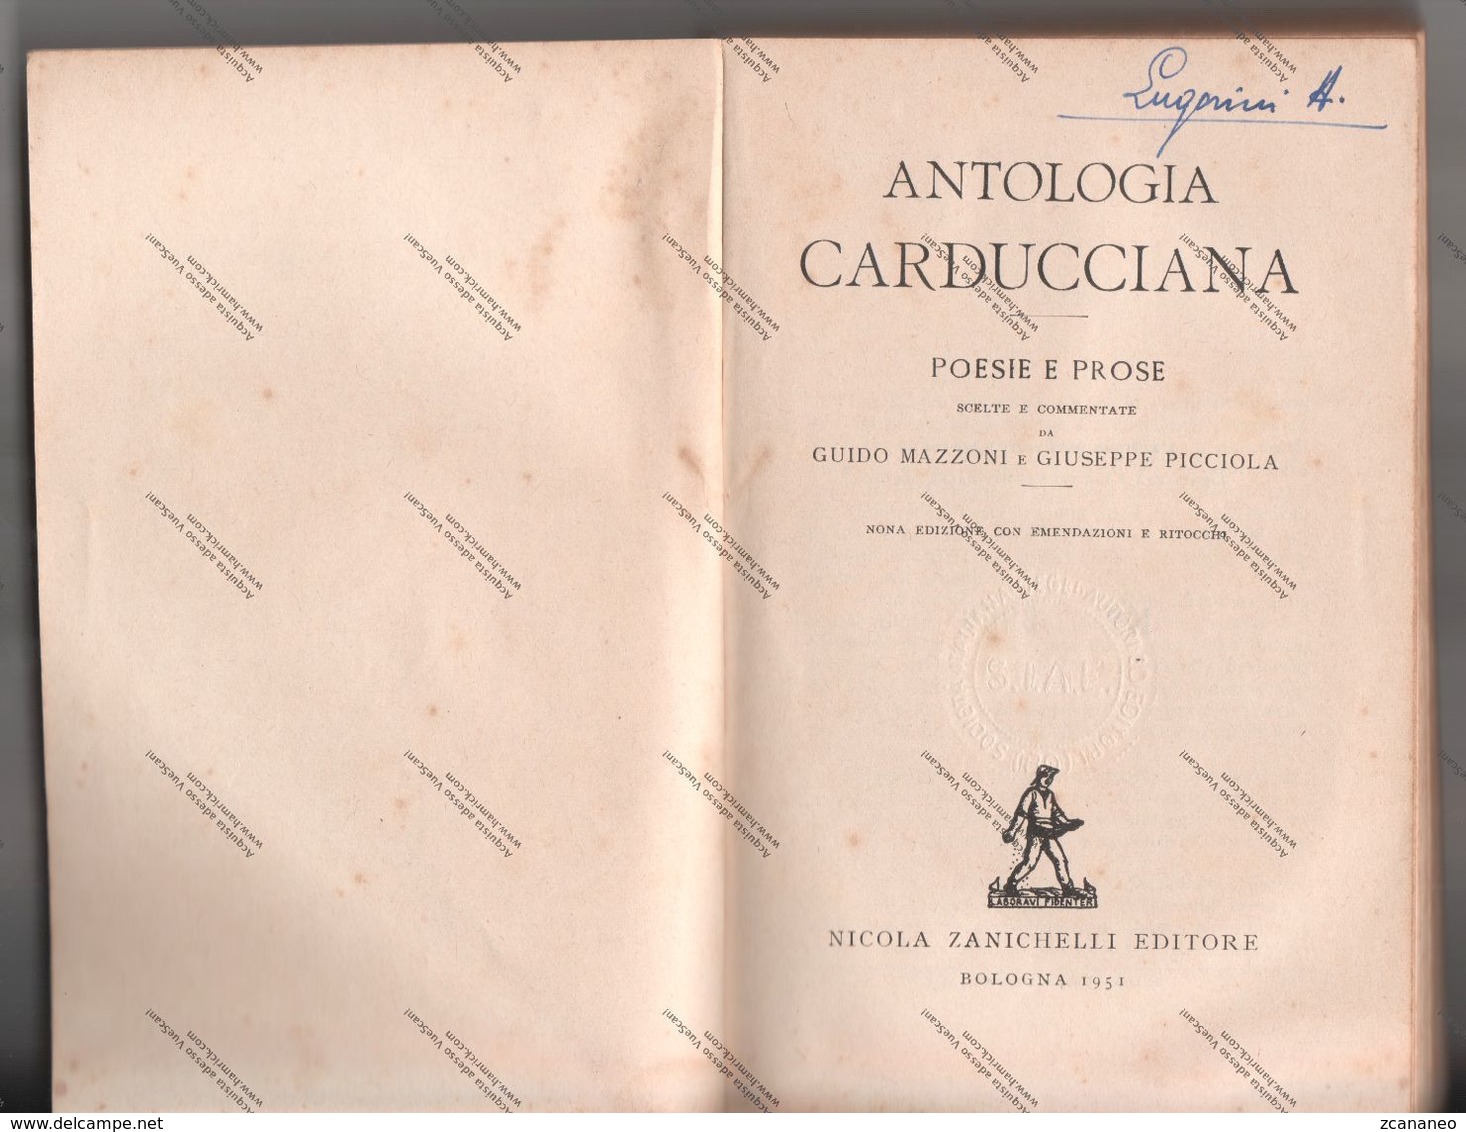 ANTOLOGIA CARDUCCIANA DI G. MAZZONI E G. PICCIOLA 1951 - POESIE E PROSE N° 3968 - - Poetry